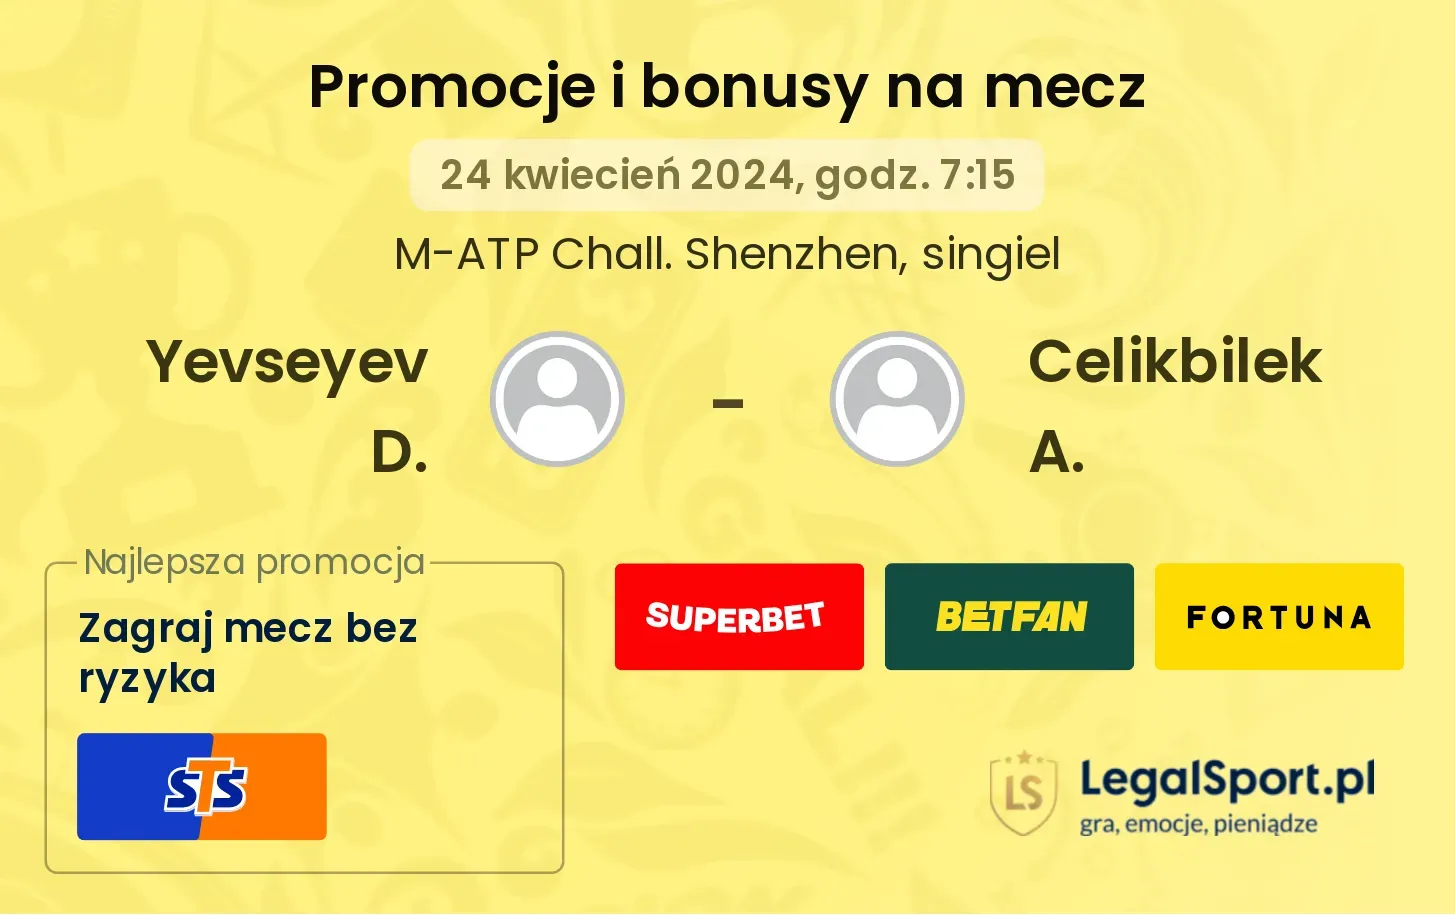 Yevseyev D. - Celikbilek A. promocje bonusy na mecz